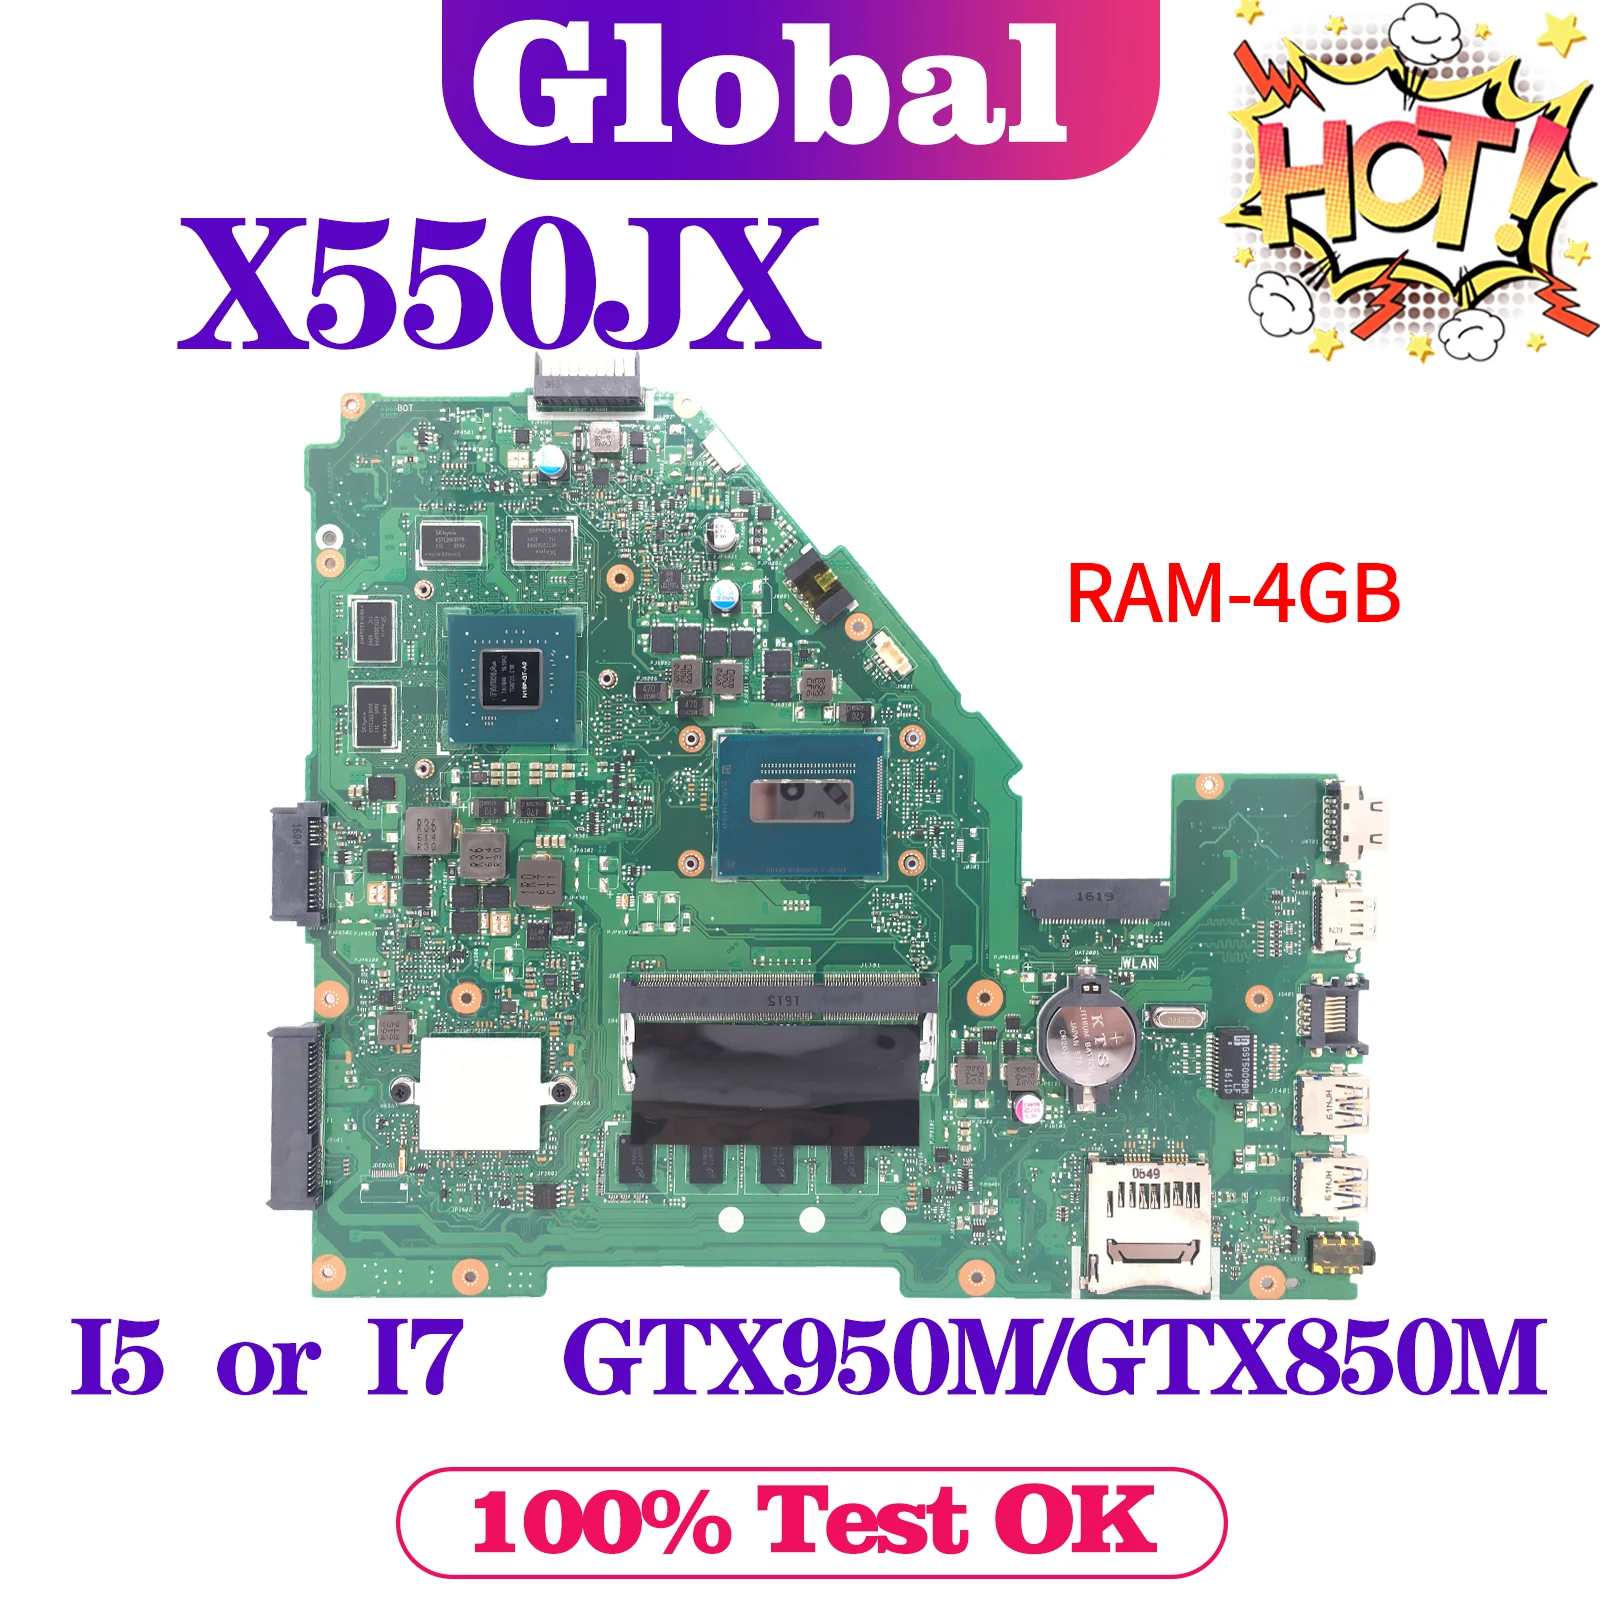 

KEFU FX50J Mainboard X550JF X550JD X550JK A550J X550J W50J X550JX K550J Laptop Motherboard I5 I7 4GB-RAM GTX950M/GTX850M/GT820